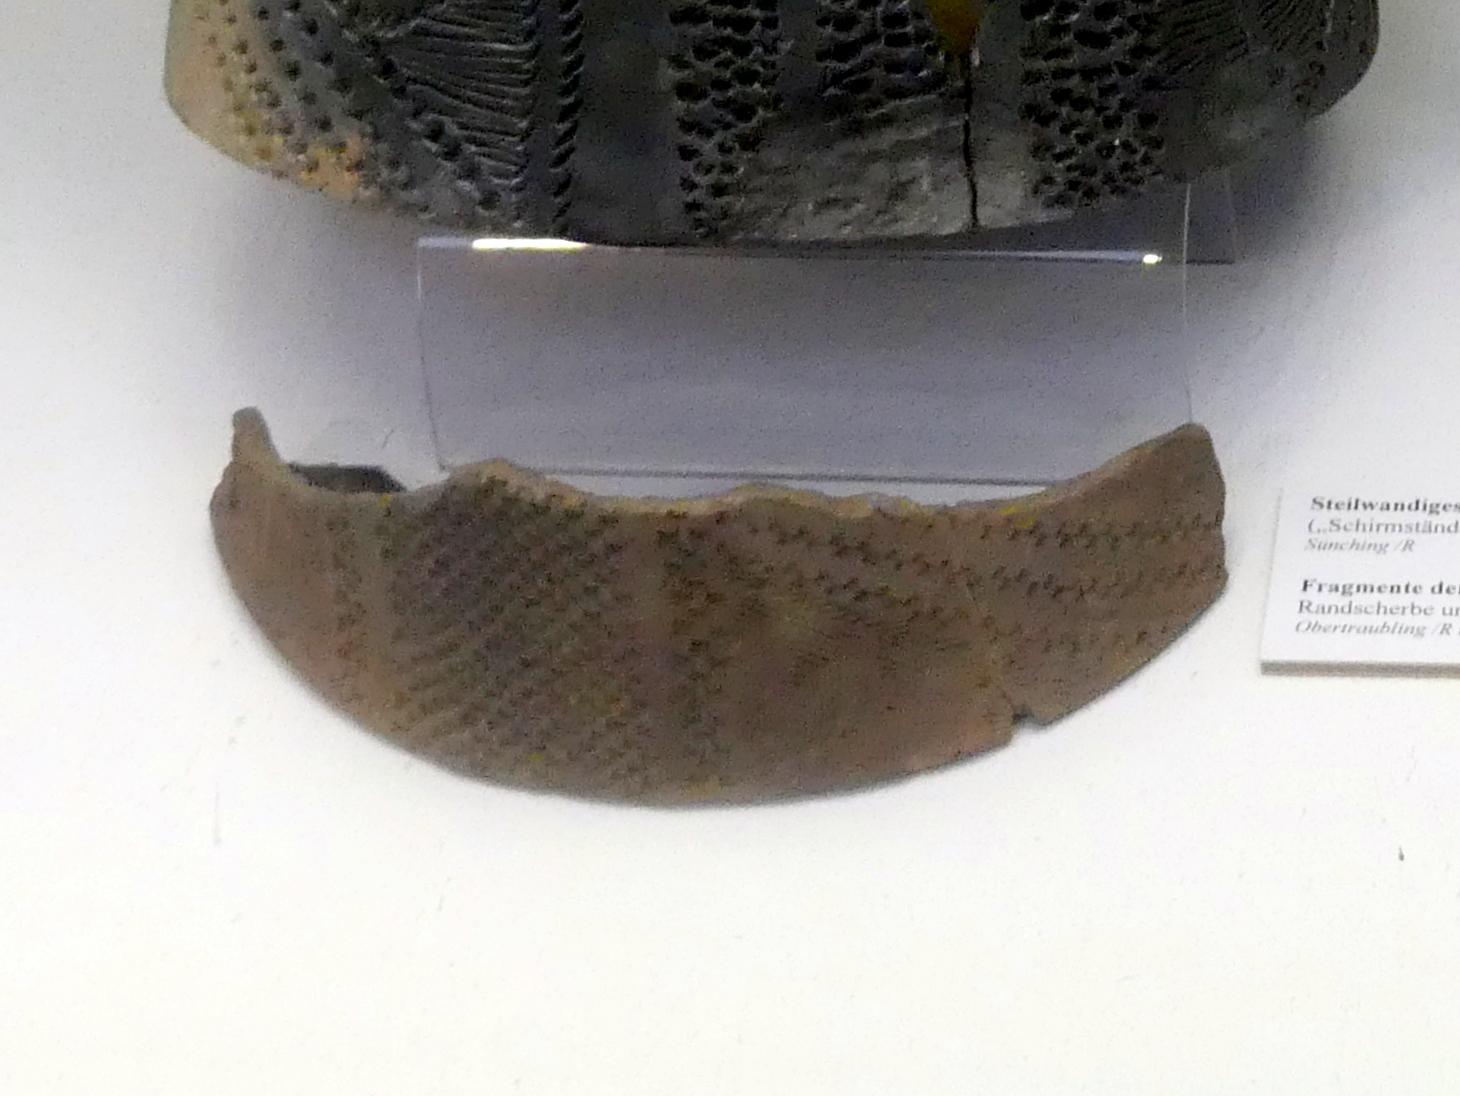 Bodenscherbe eines steilwandigen Gefäßes, Mittelneolithikum, 5500 - 4400 v. Chr.